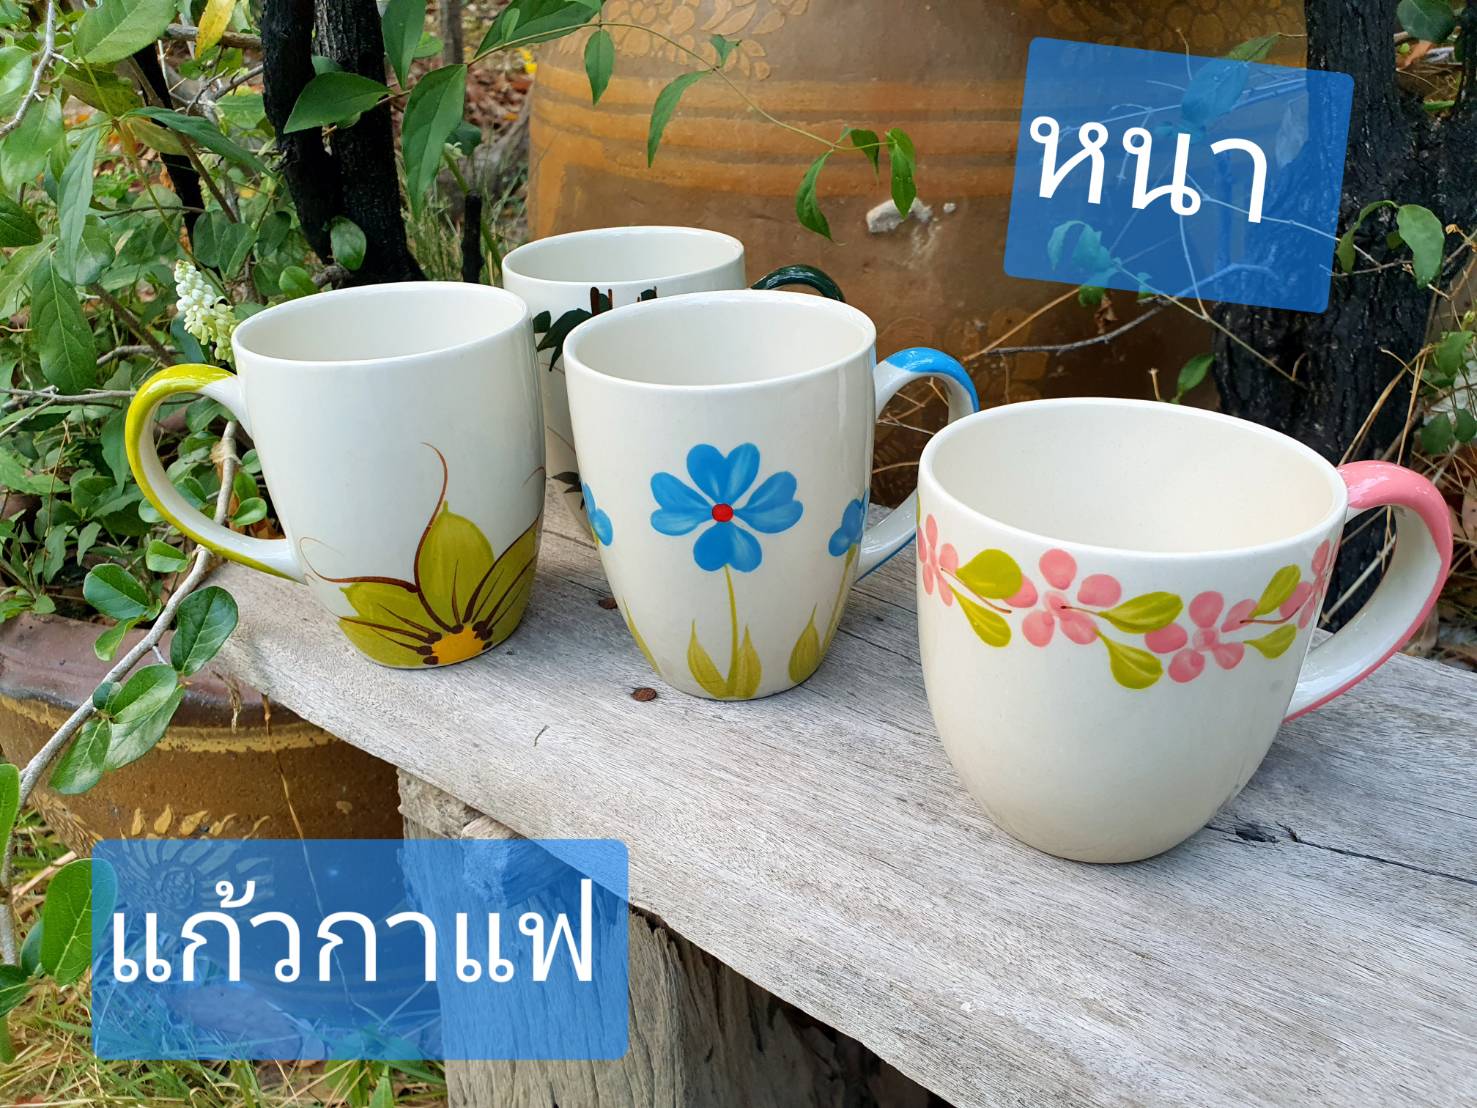 ใส่ได้9-10ออนซ์ (280-300กรัม)   แก้วกาแฟ    Ceramic coffee mug   สูง9-10cm   แก้วเซรามิค   อย่างหนาครับ  แก้วกาแฟสวยๆ  แก้วกาแฟเซรามิค  ถ้วยกาแฟ